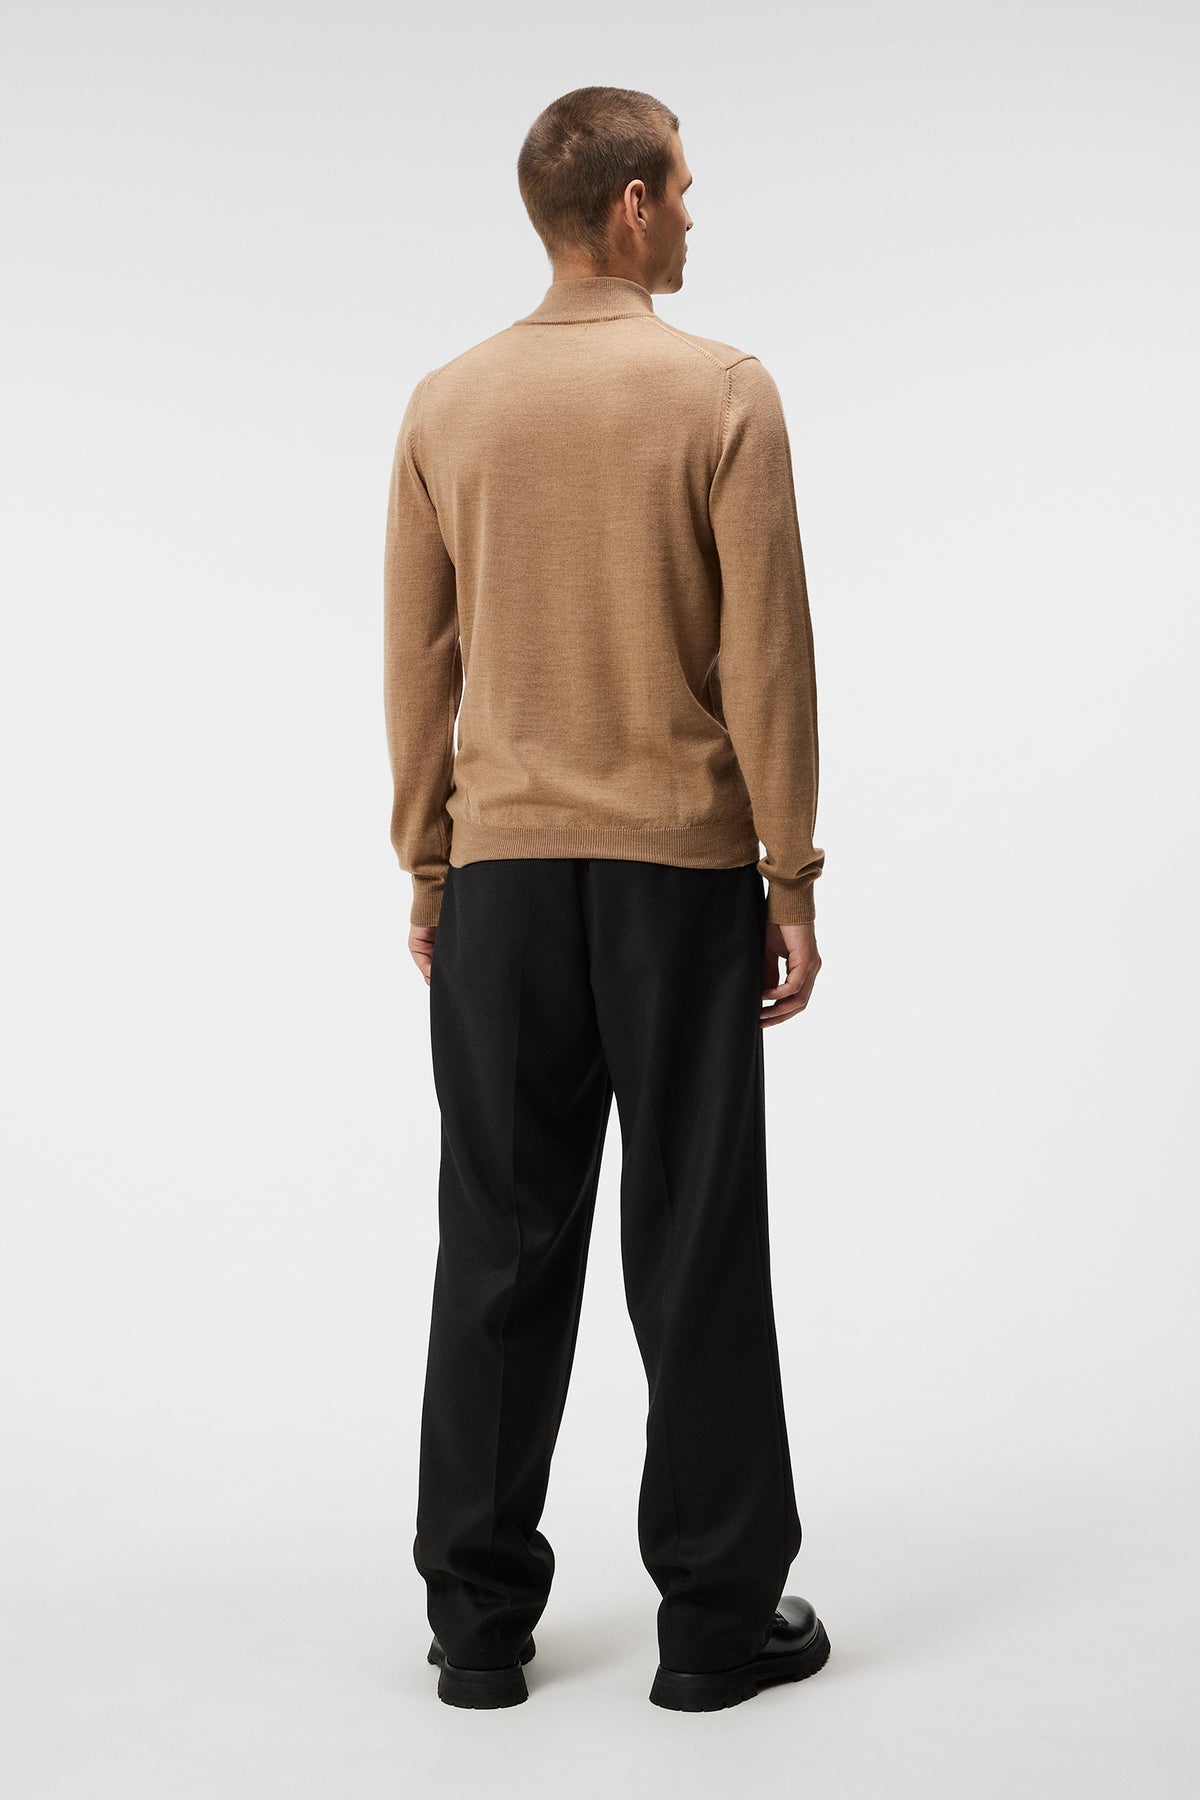 Kiyan Quarter Zip Sweater / Chipmunk Melange